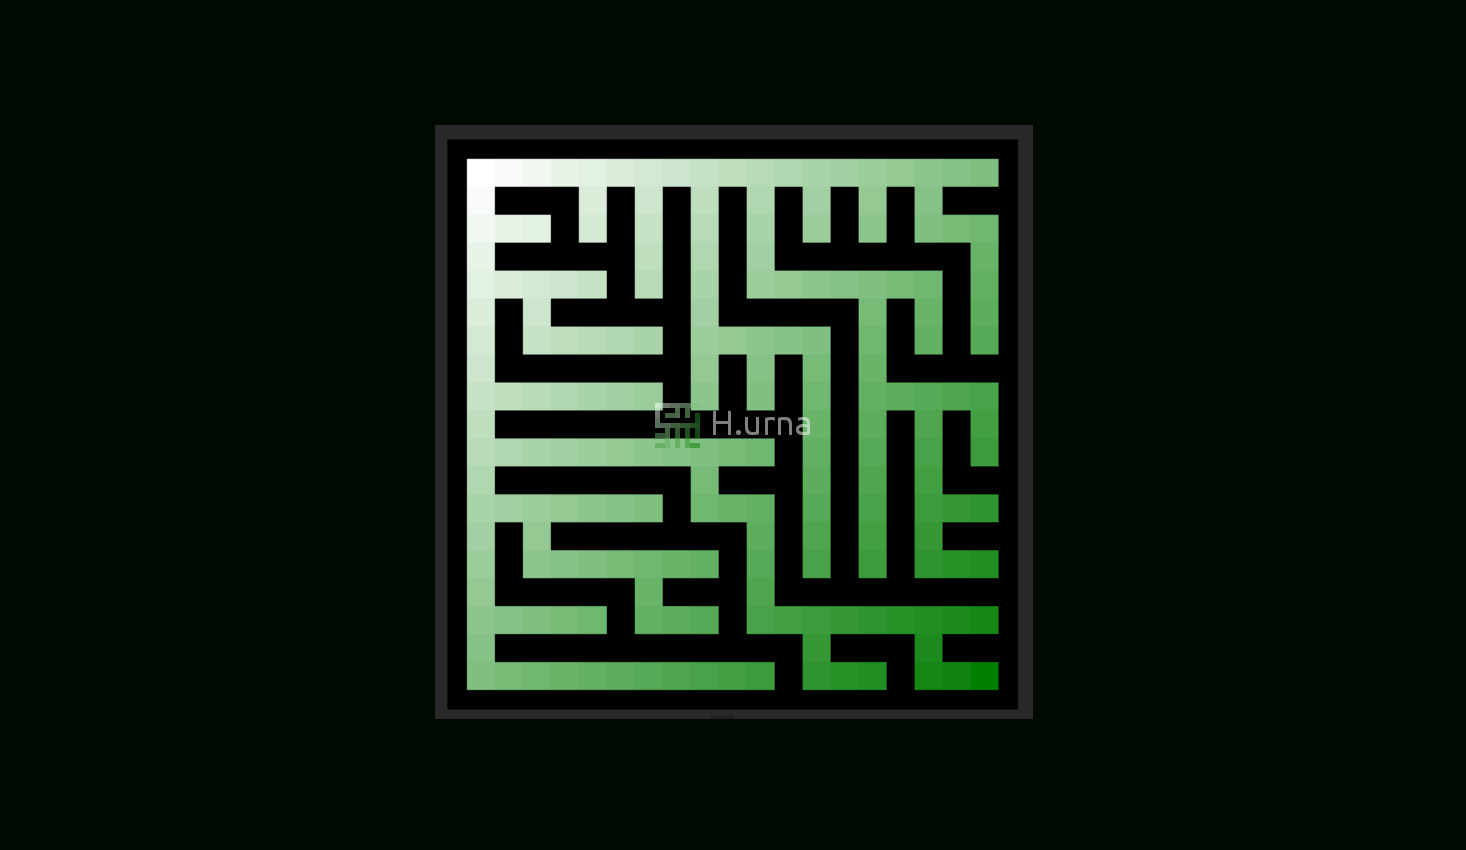 Glossaire Technique - Labyrinthes | H.urna Academy tout Labyrinthe Difficile